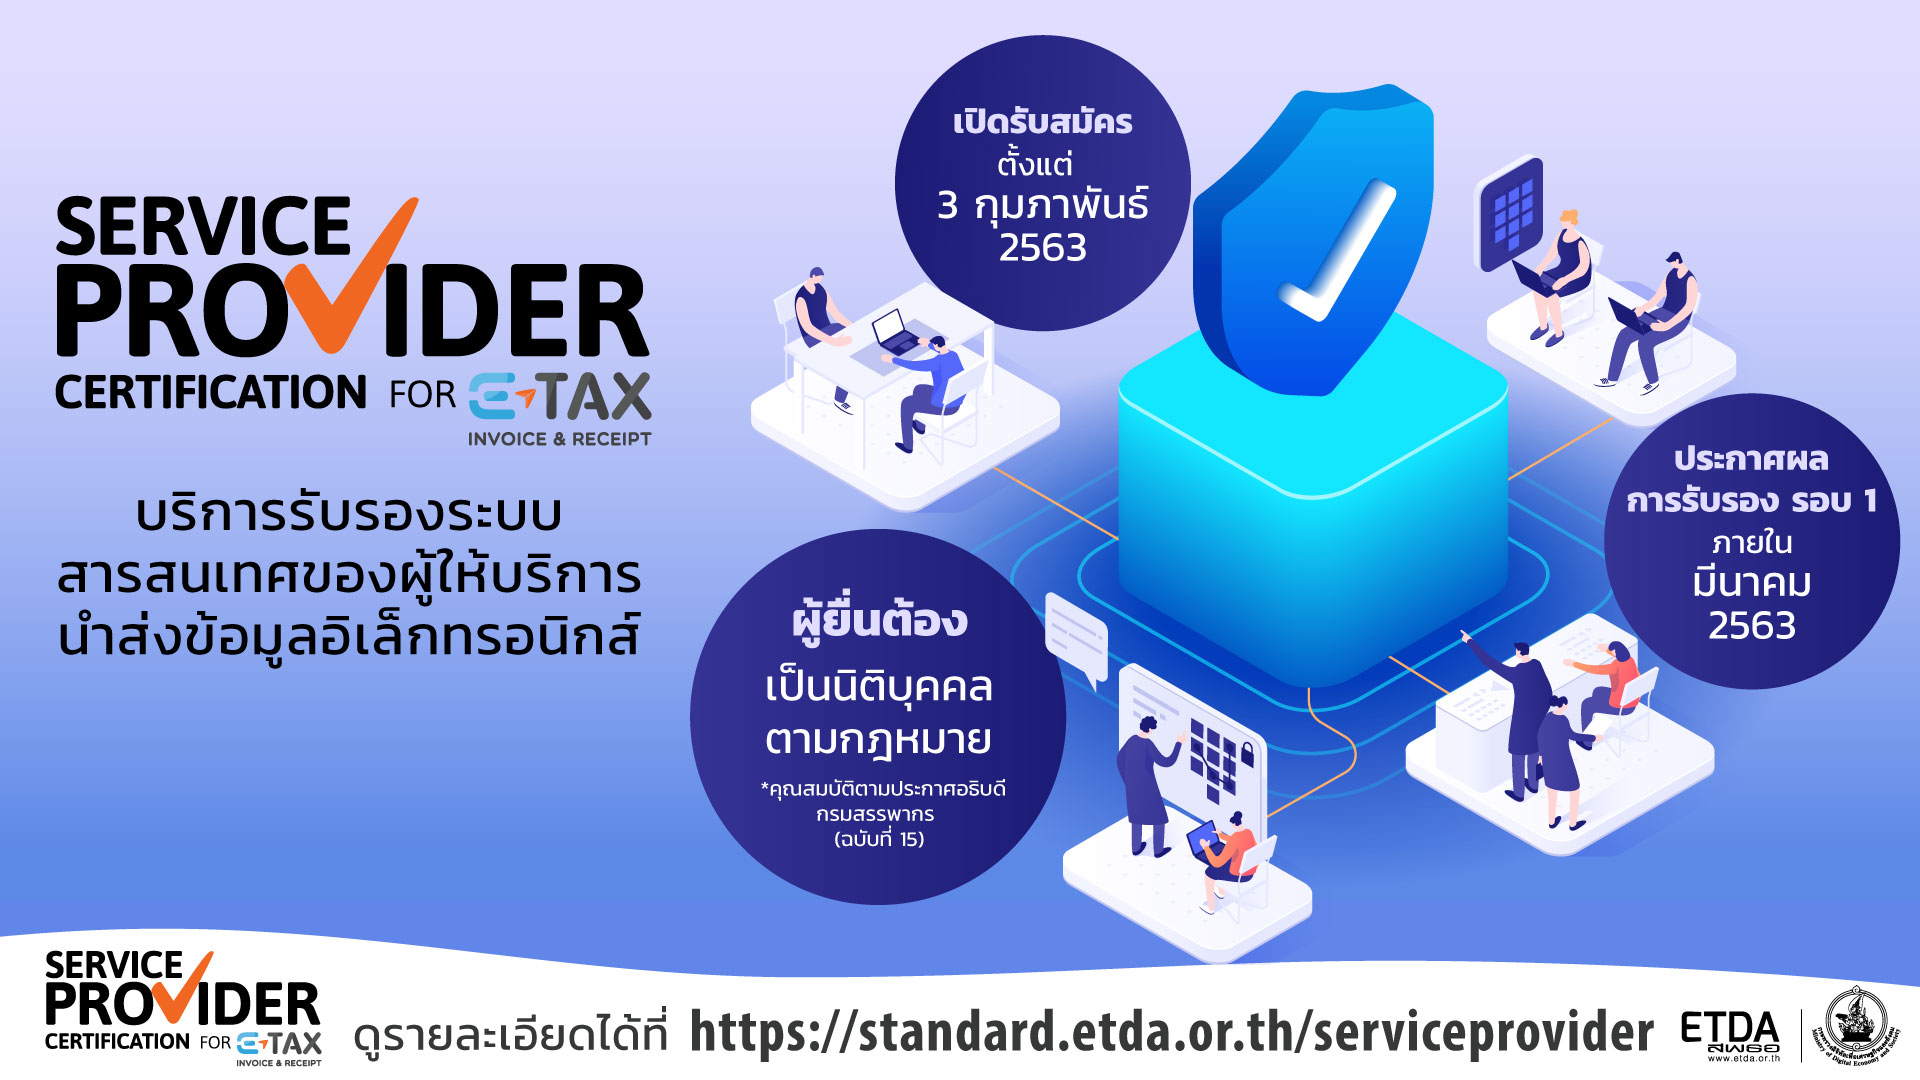 ETDA ดีเดย์รับลงทะเบียน 3 ก.พ.นี้ ในการรับรองระบบสารสนเทศผู้ให้บริการนำส่งข้อมูล e-Tax Invoice และ e